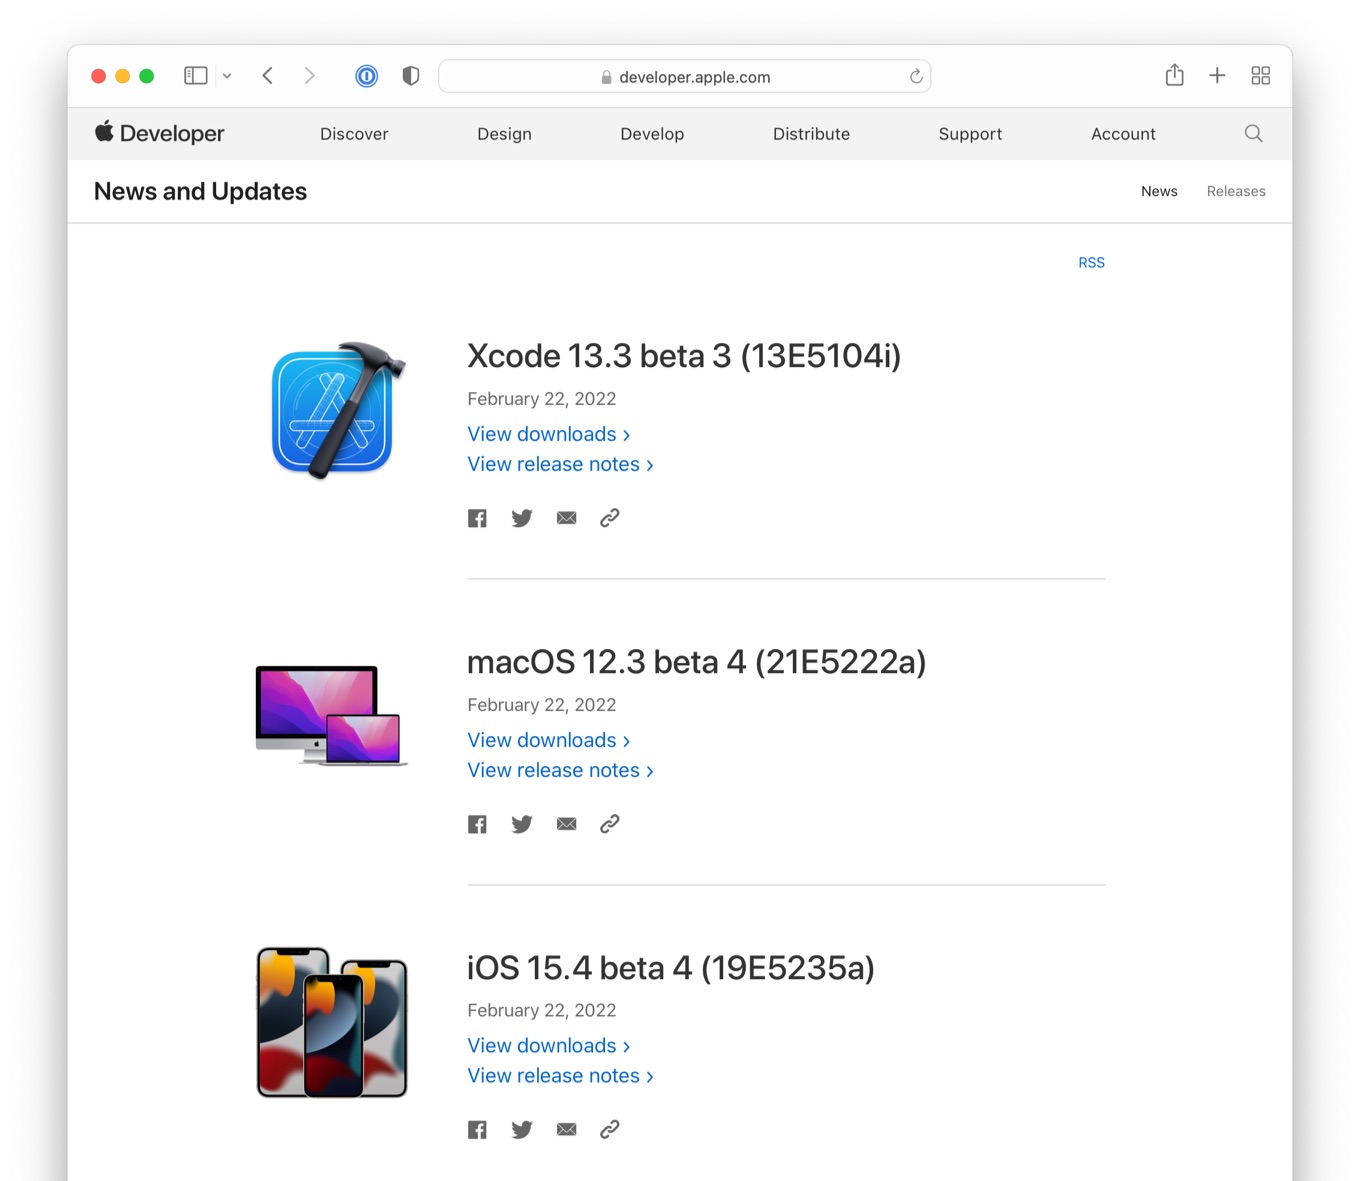 macOS 12.3 beta 4 Build 21E5222a